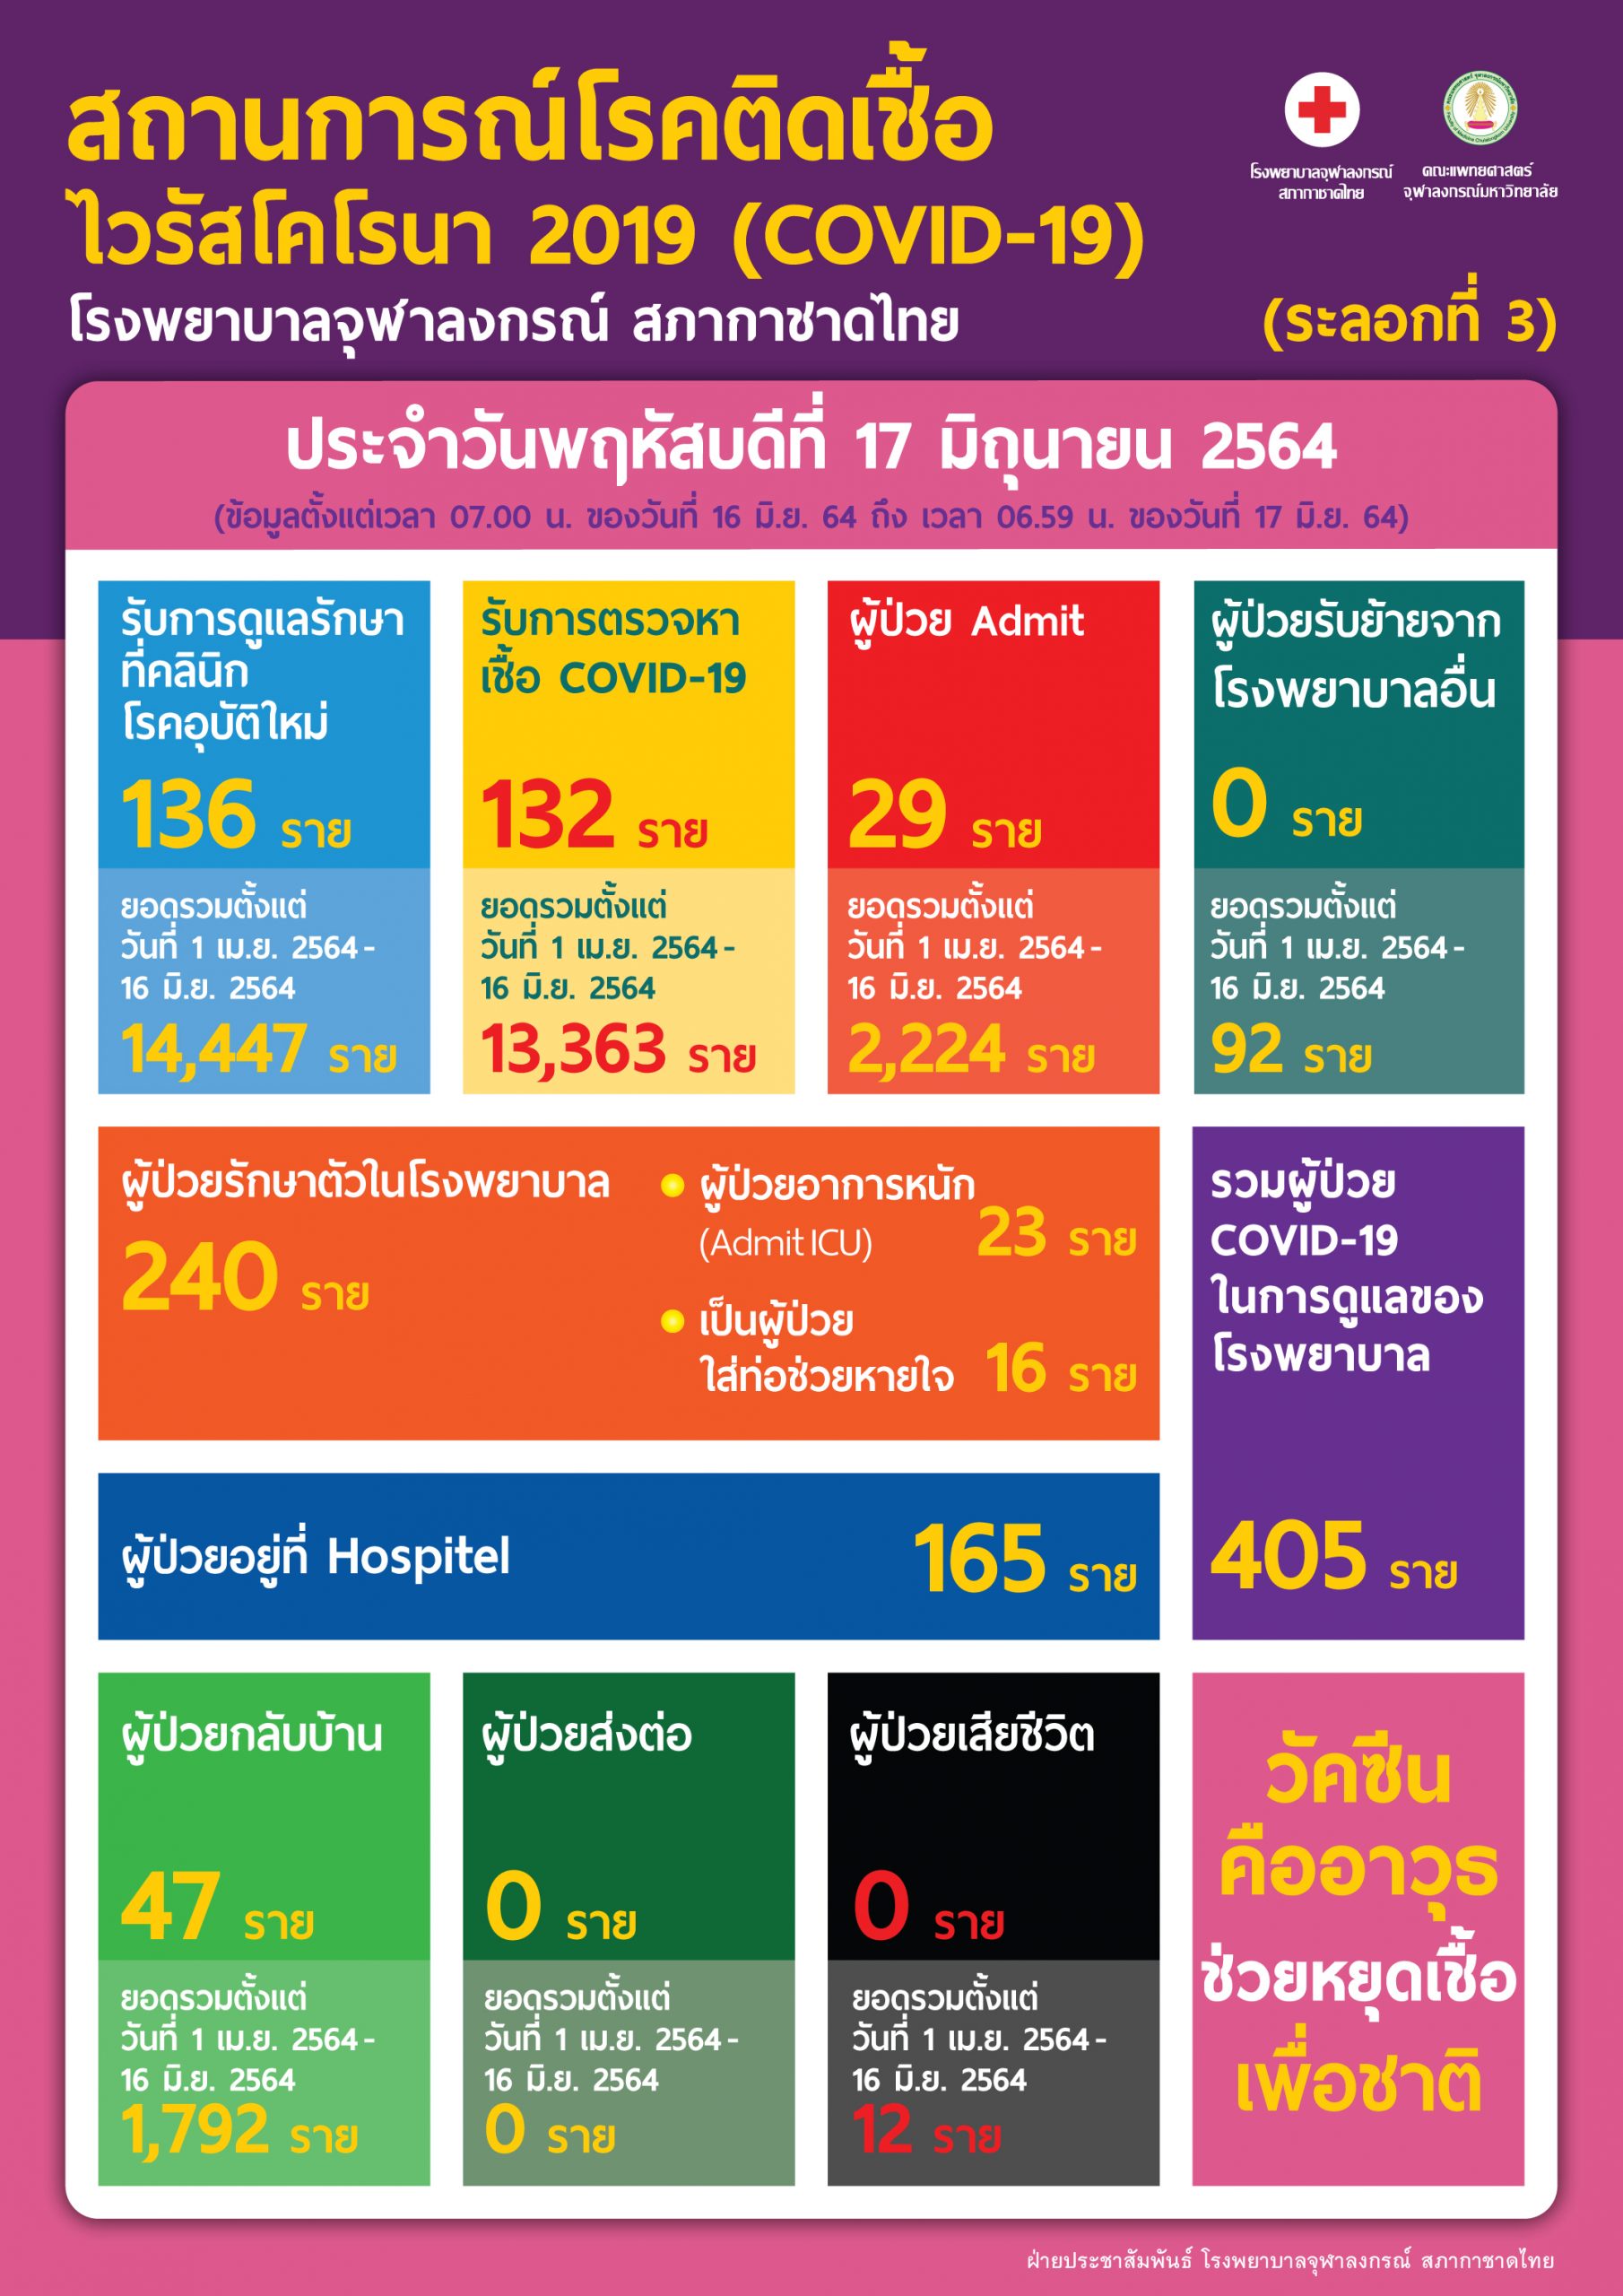 สถานการณ์โรคติดเชื้อไวรัสโคโรนา 2019 (COVID-19) (ระลอกที่ 3) โรงพยาบาลจุฬลงกรณ์ สภากาชาดไทย  ประจำวันพฤหัสบดีที่ 17 มิถุนายน 2564